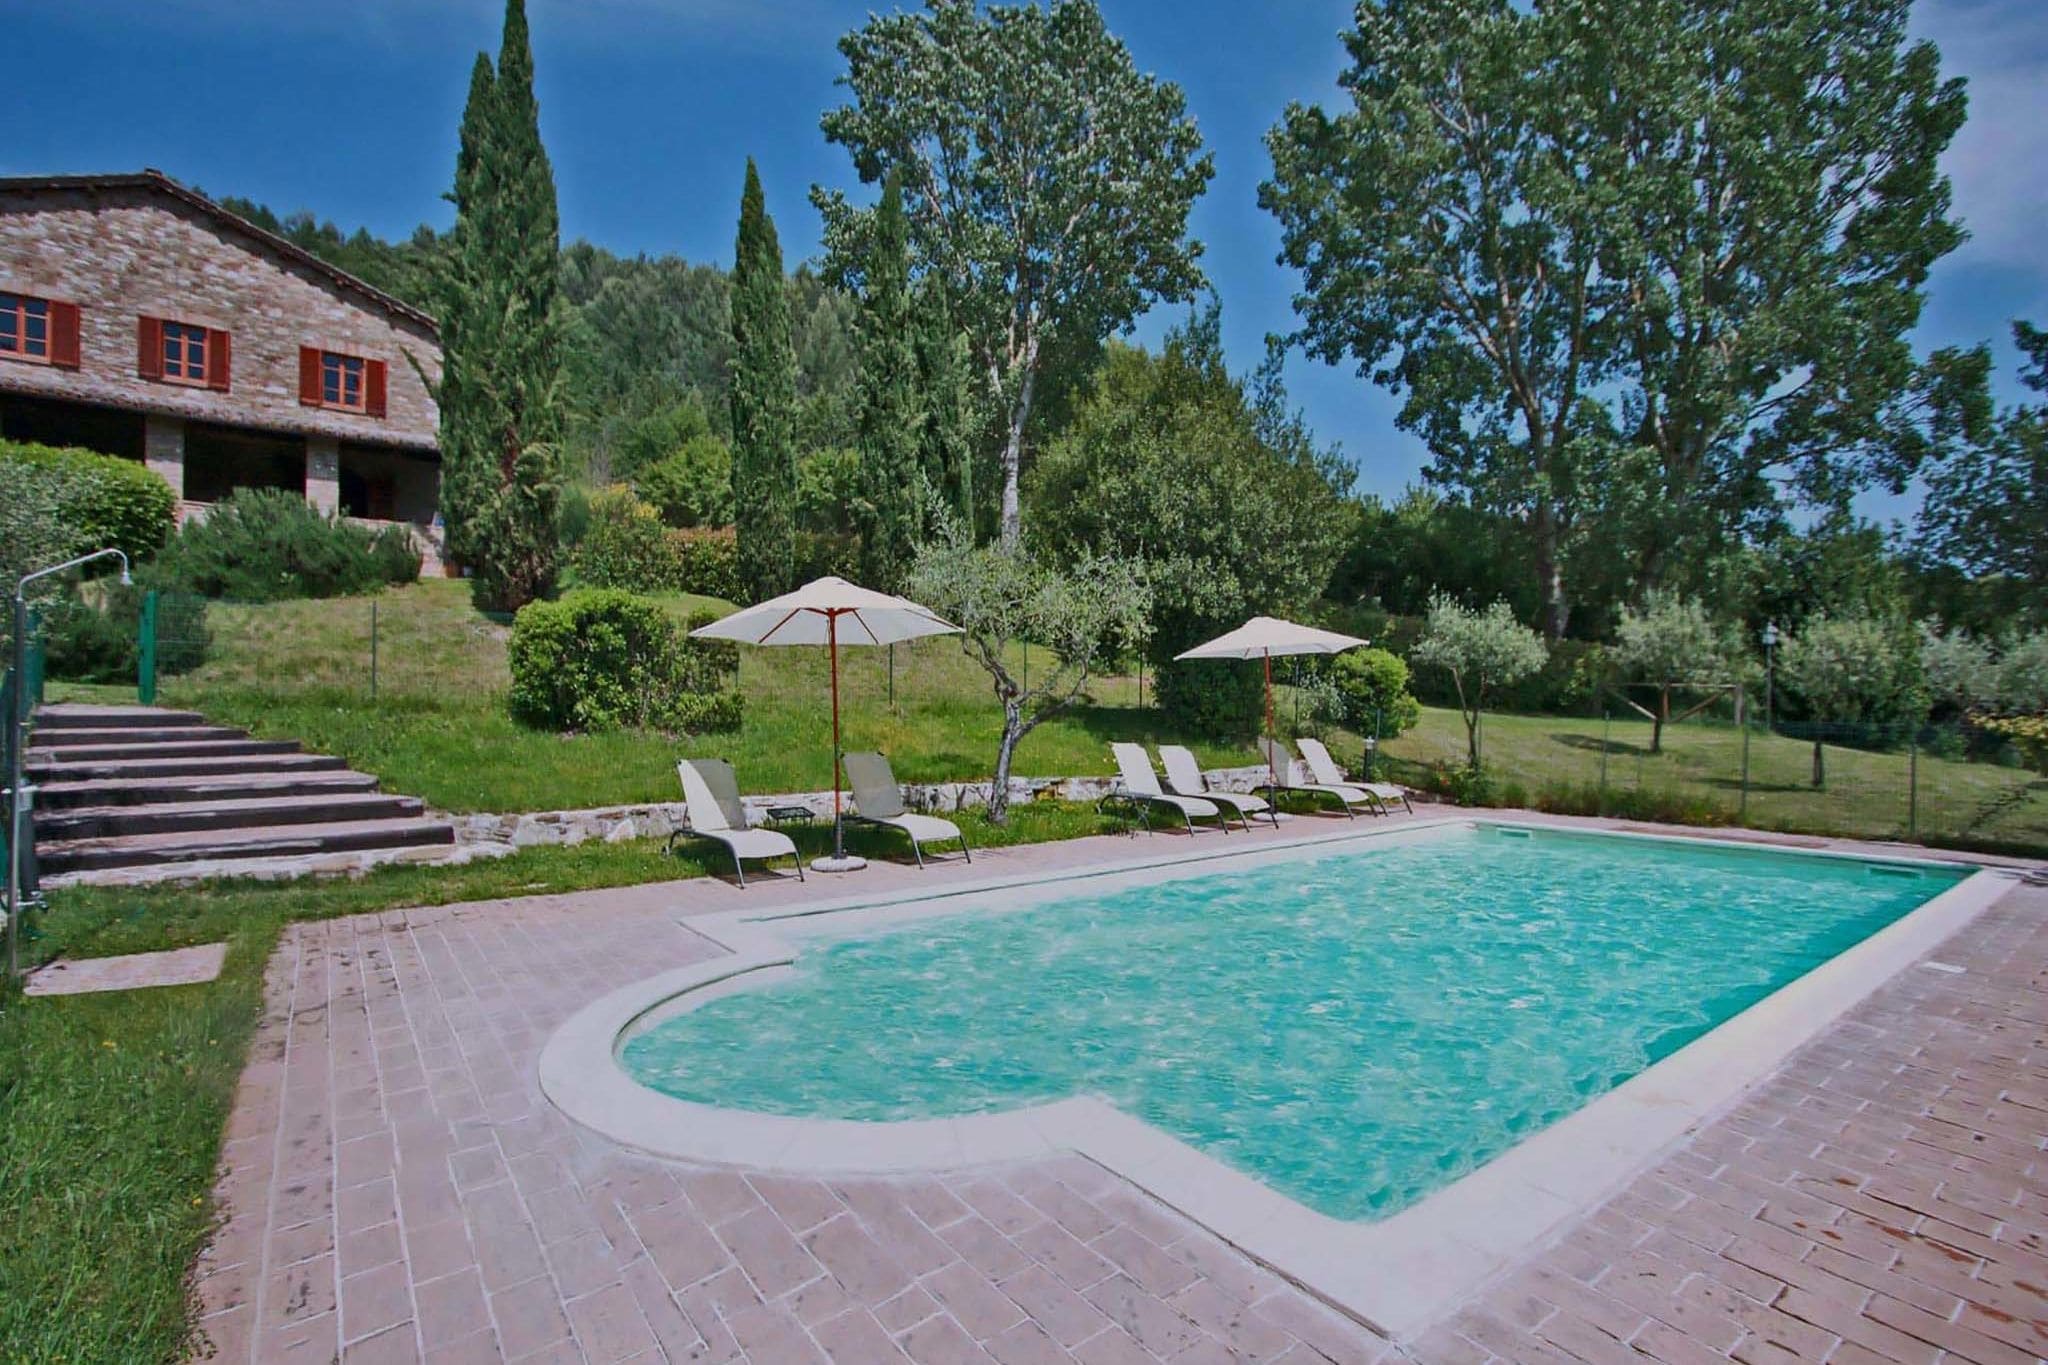 Ruimtelijk vakantiehuis in Assisi met grote tuin